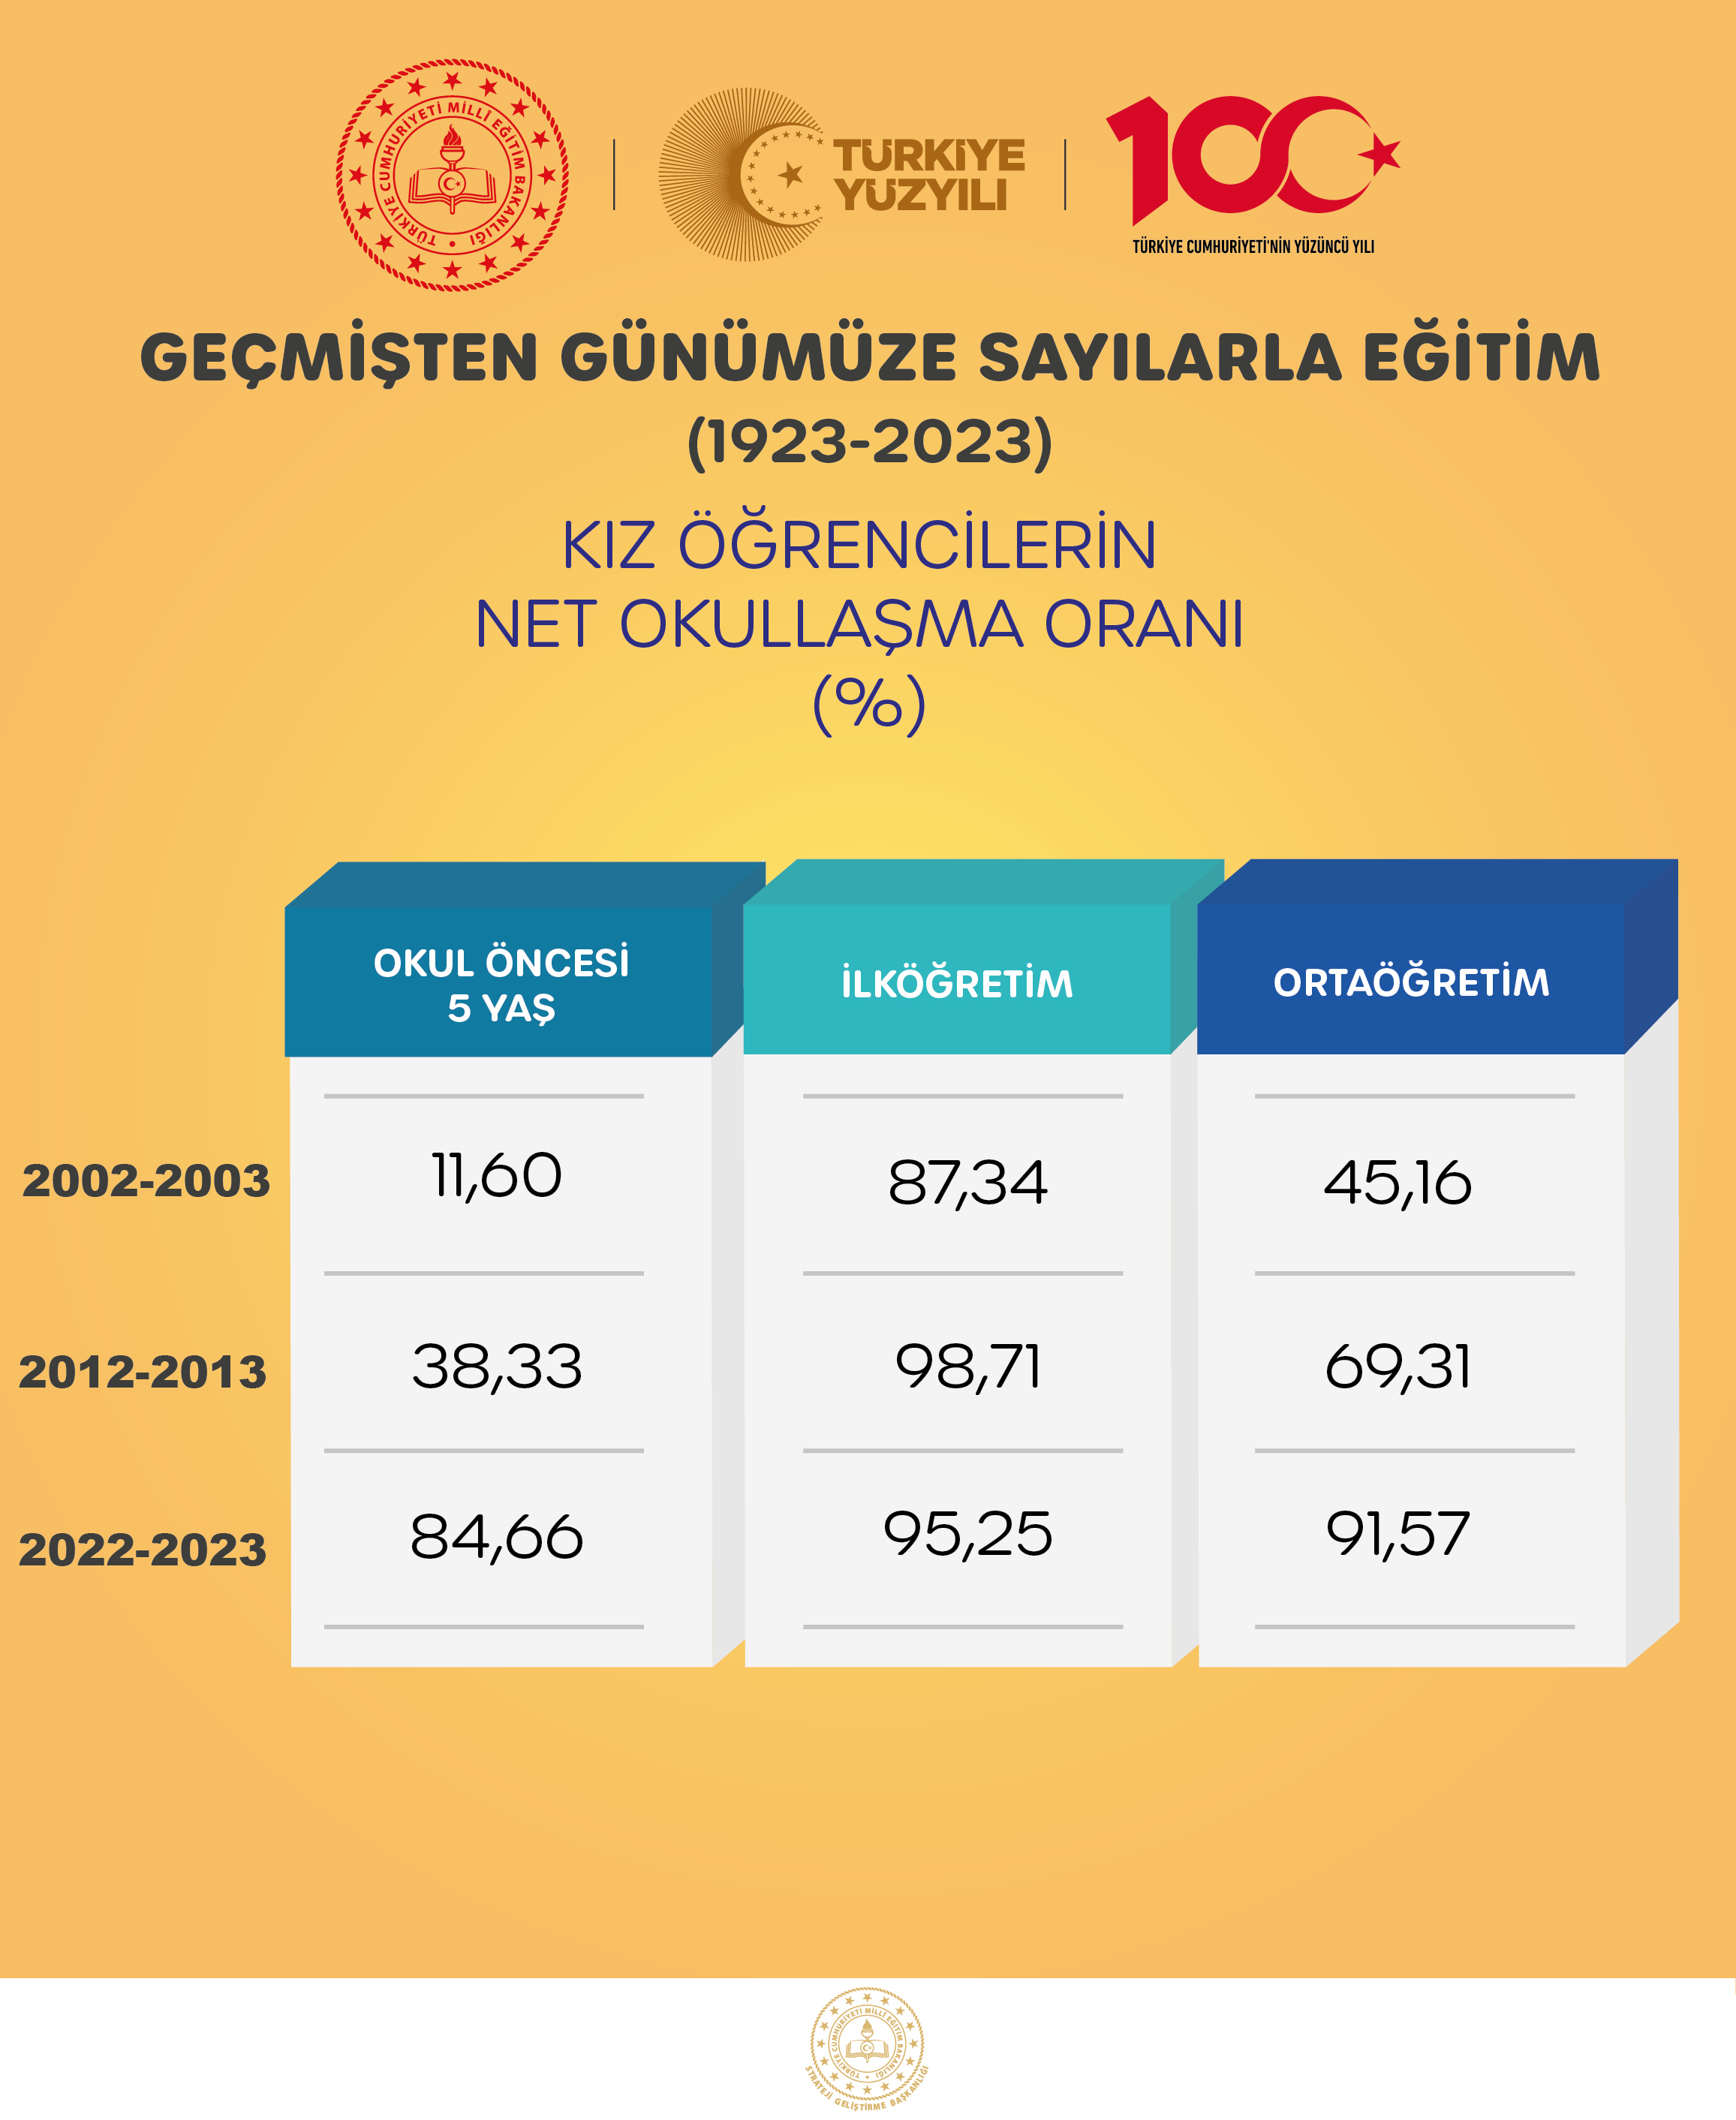 KIZ ÖĞRENCİLERİN NET OKULLAŞMA ORANI (%)